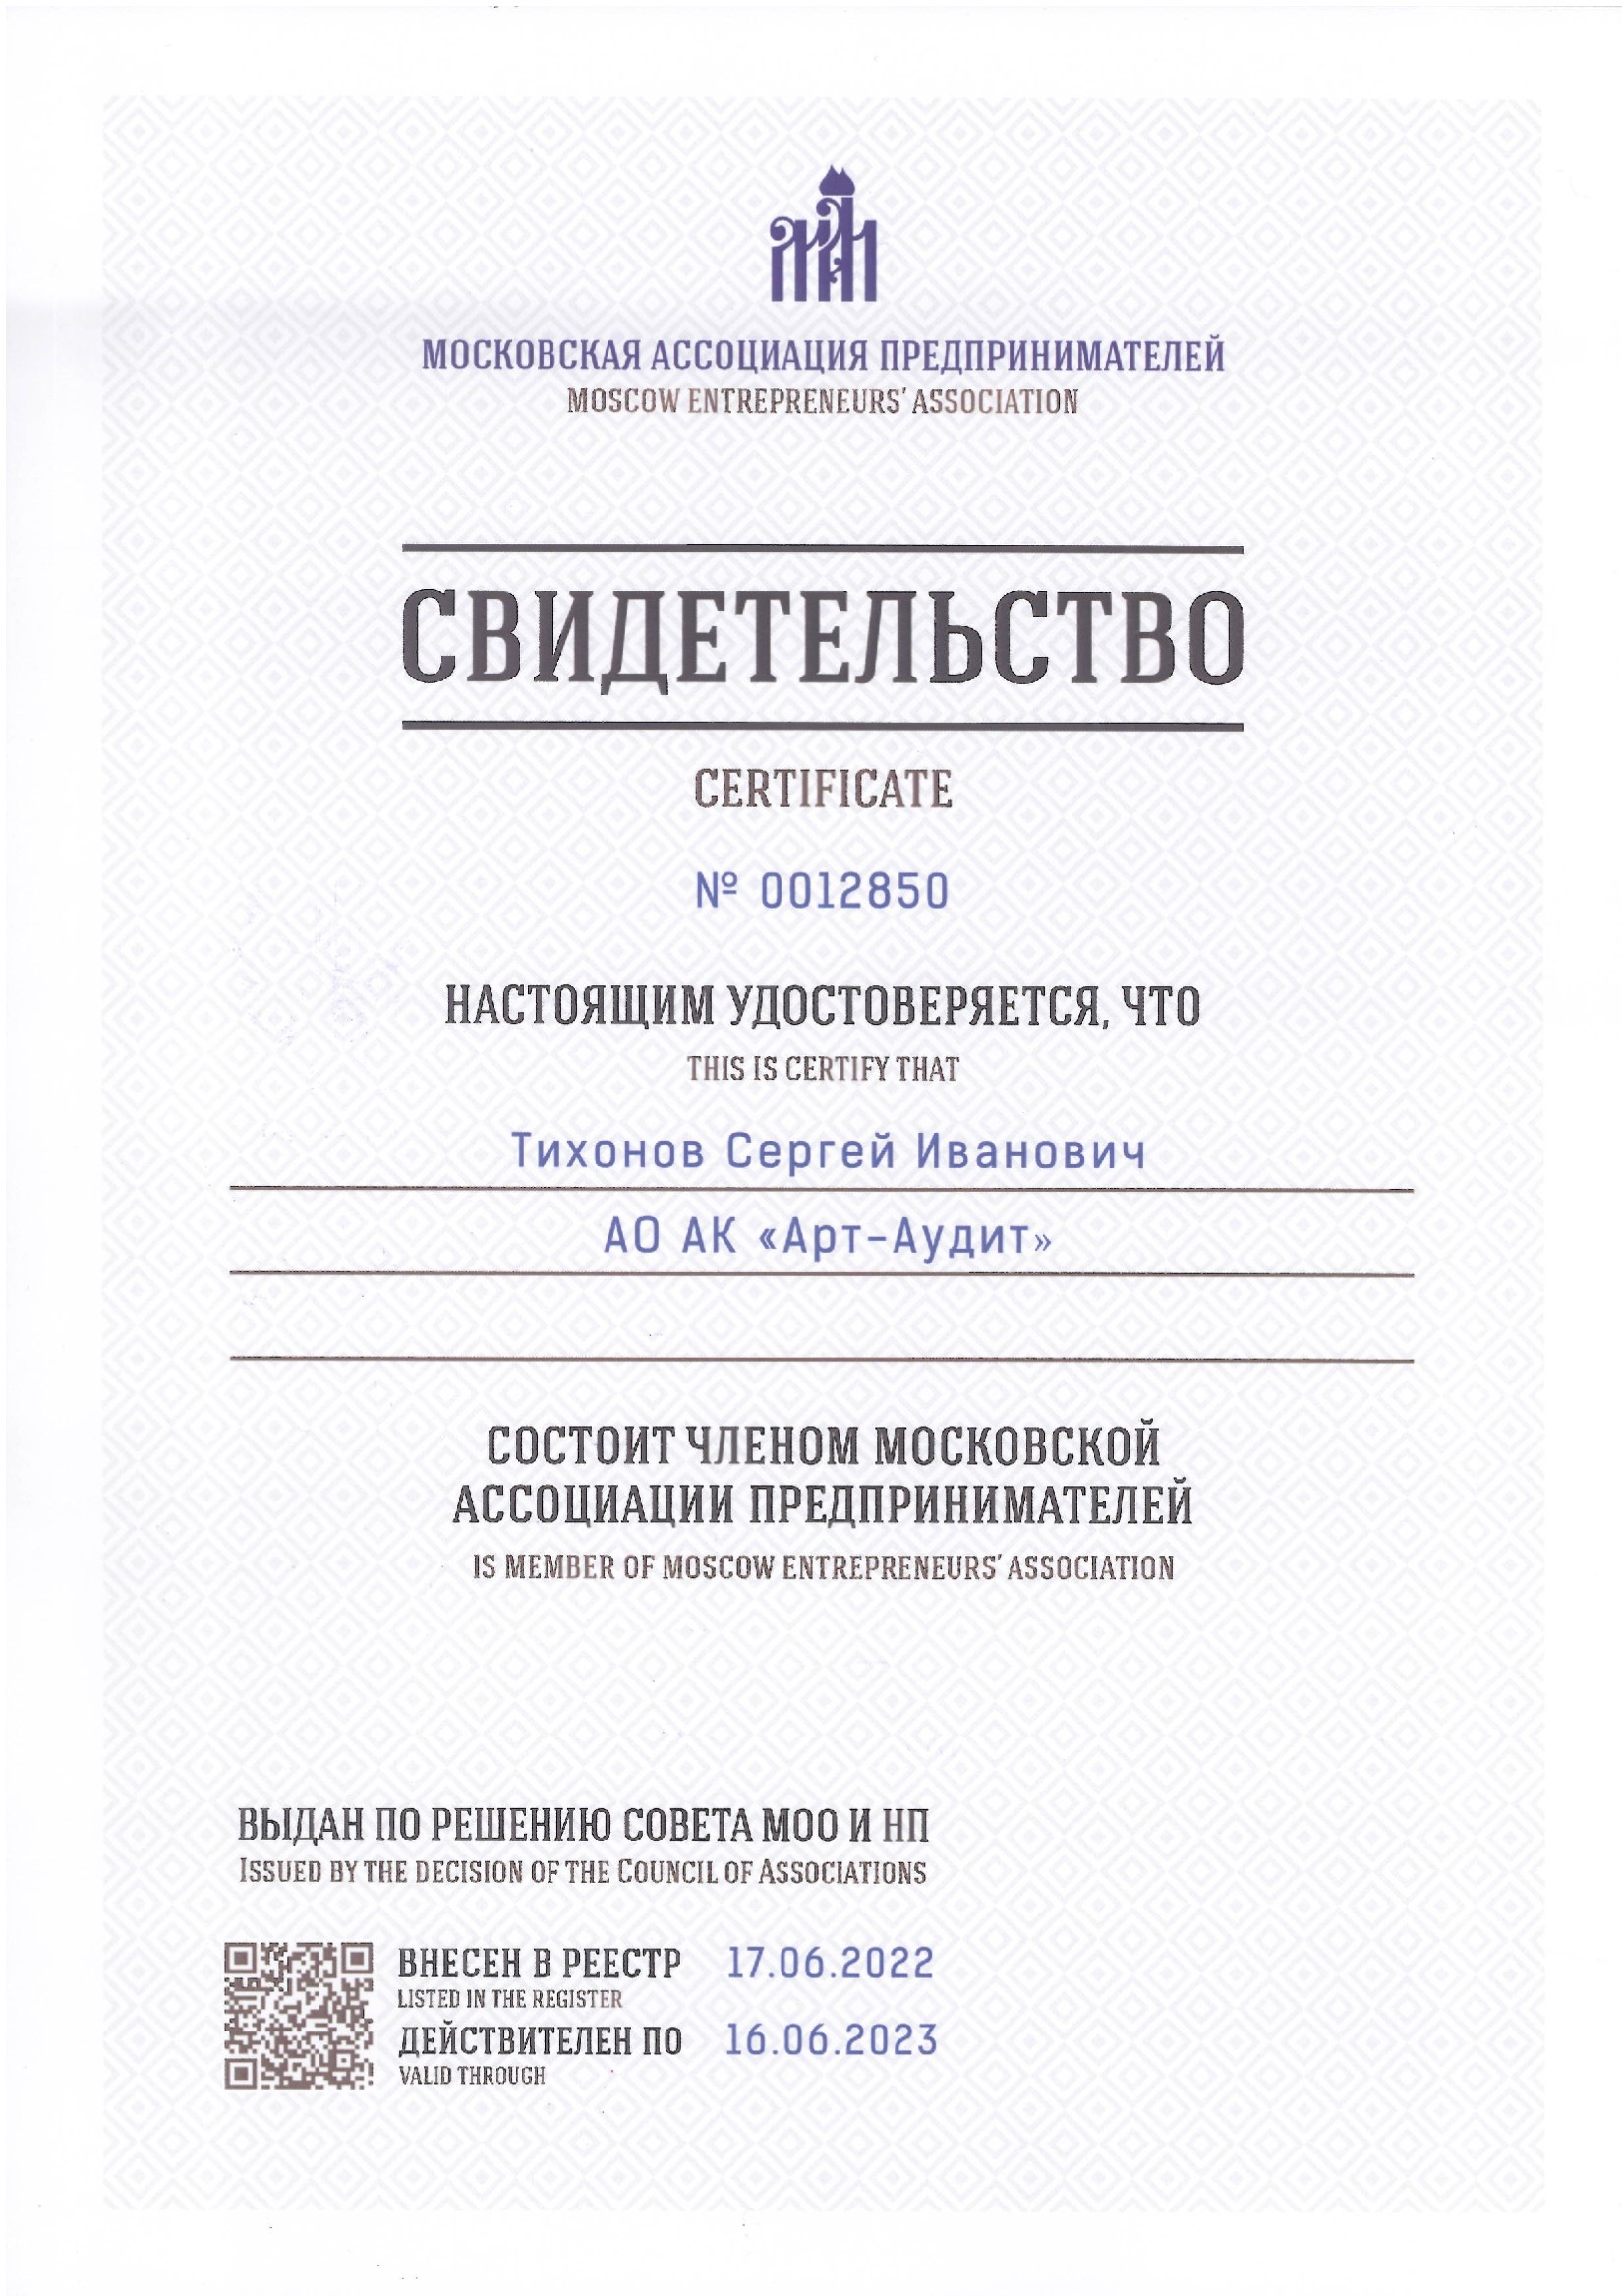 АО АК АРТ-АУДИТ сертификат о вступлении в МАП от 17.06.2022